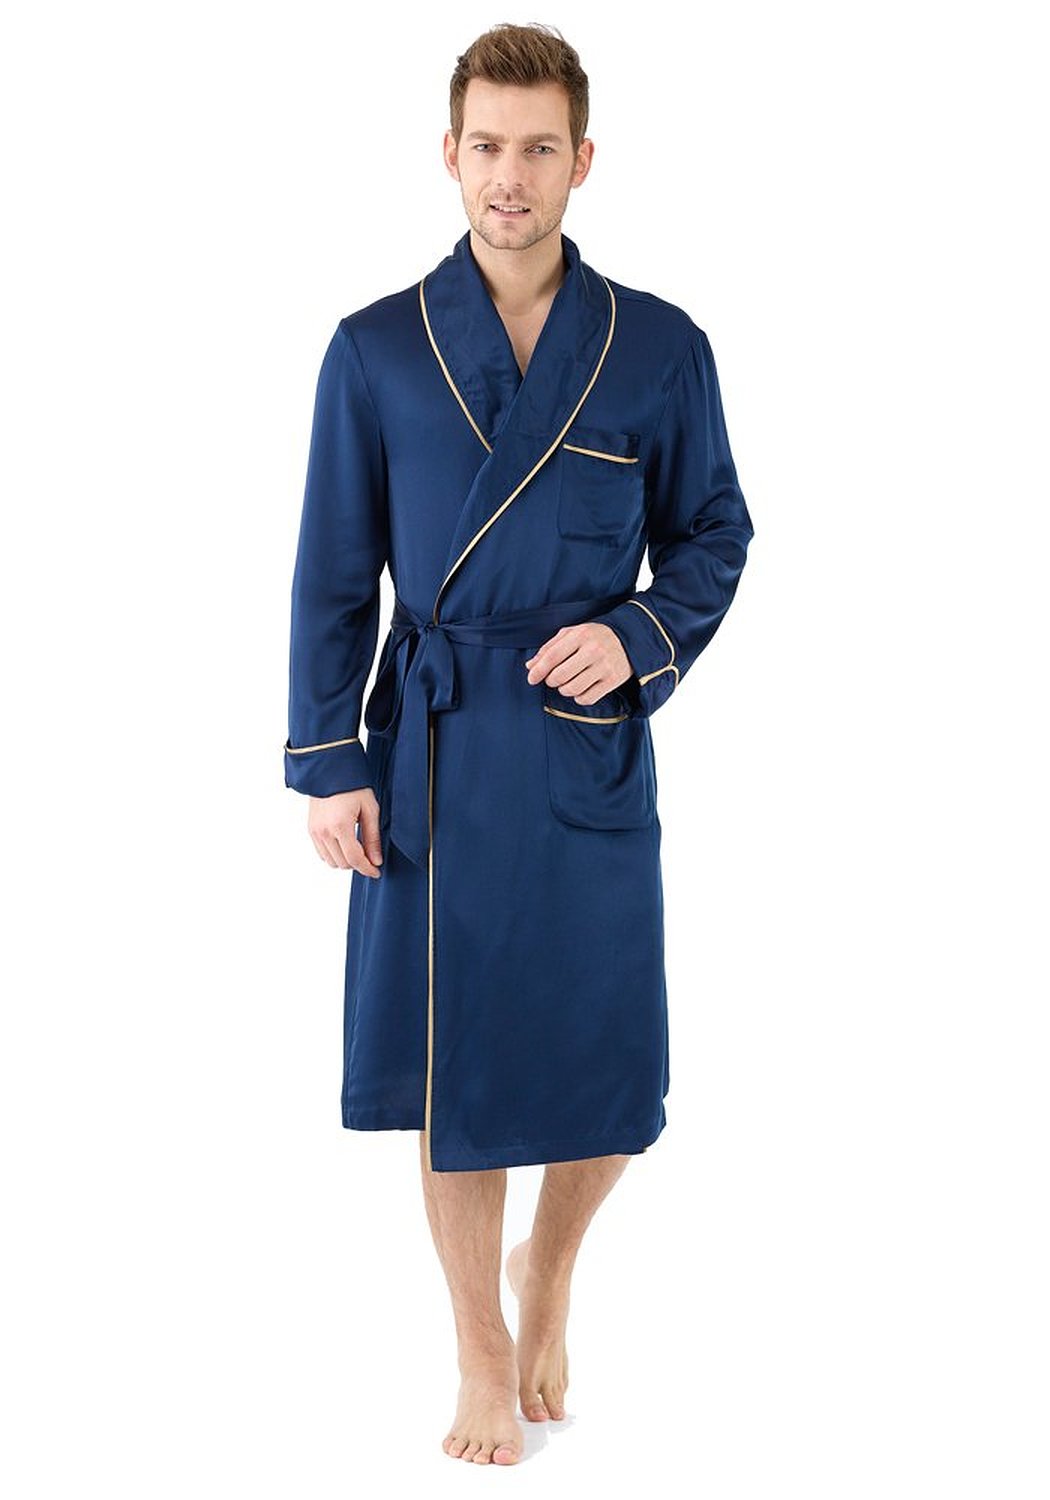 Narasilk Men's 100% Satin Silk, Contra Trim Manly Robe, Lounge Sleepwear